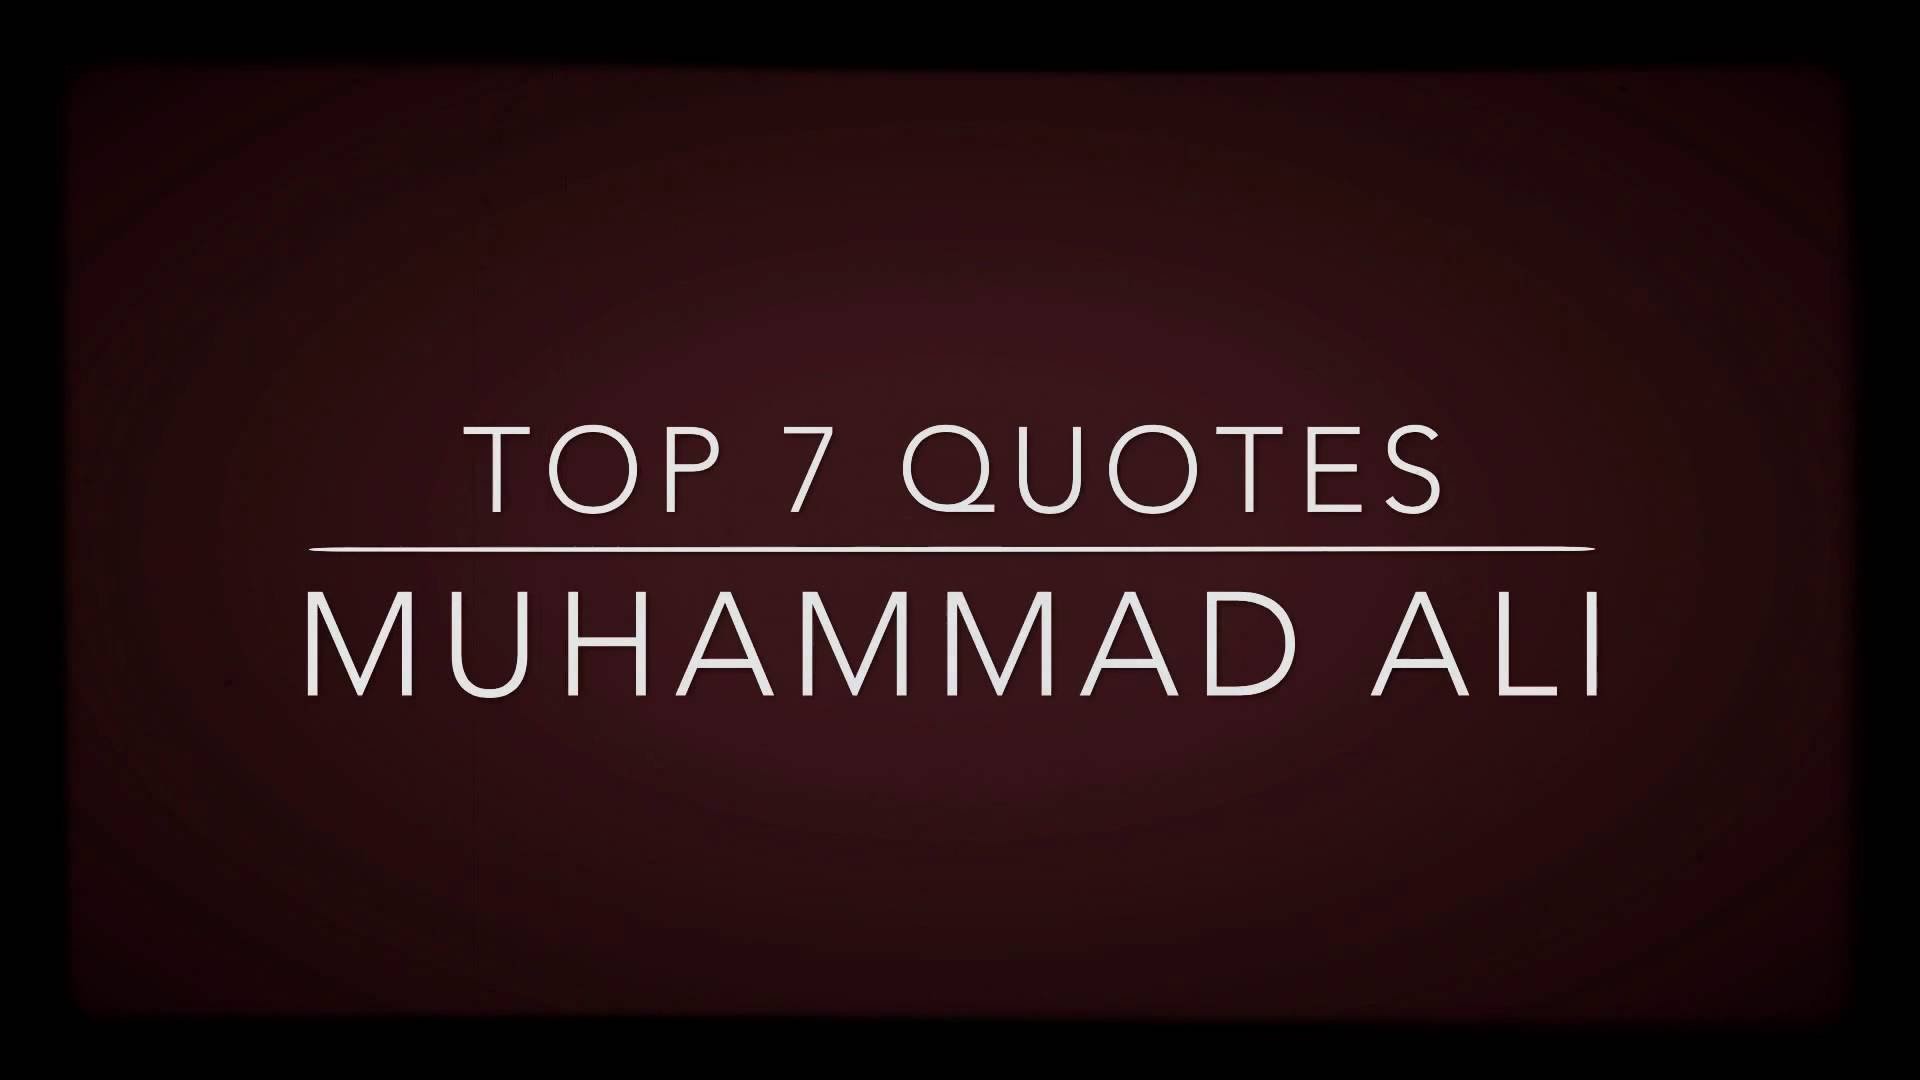 1920x1080 Top 7 Muhammad Ali Quotes - R.I.P